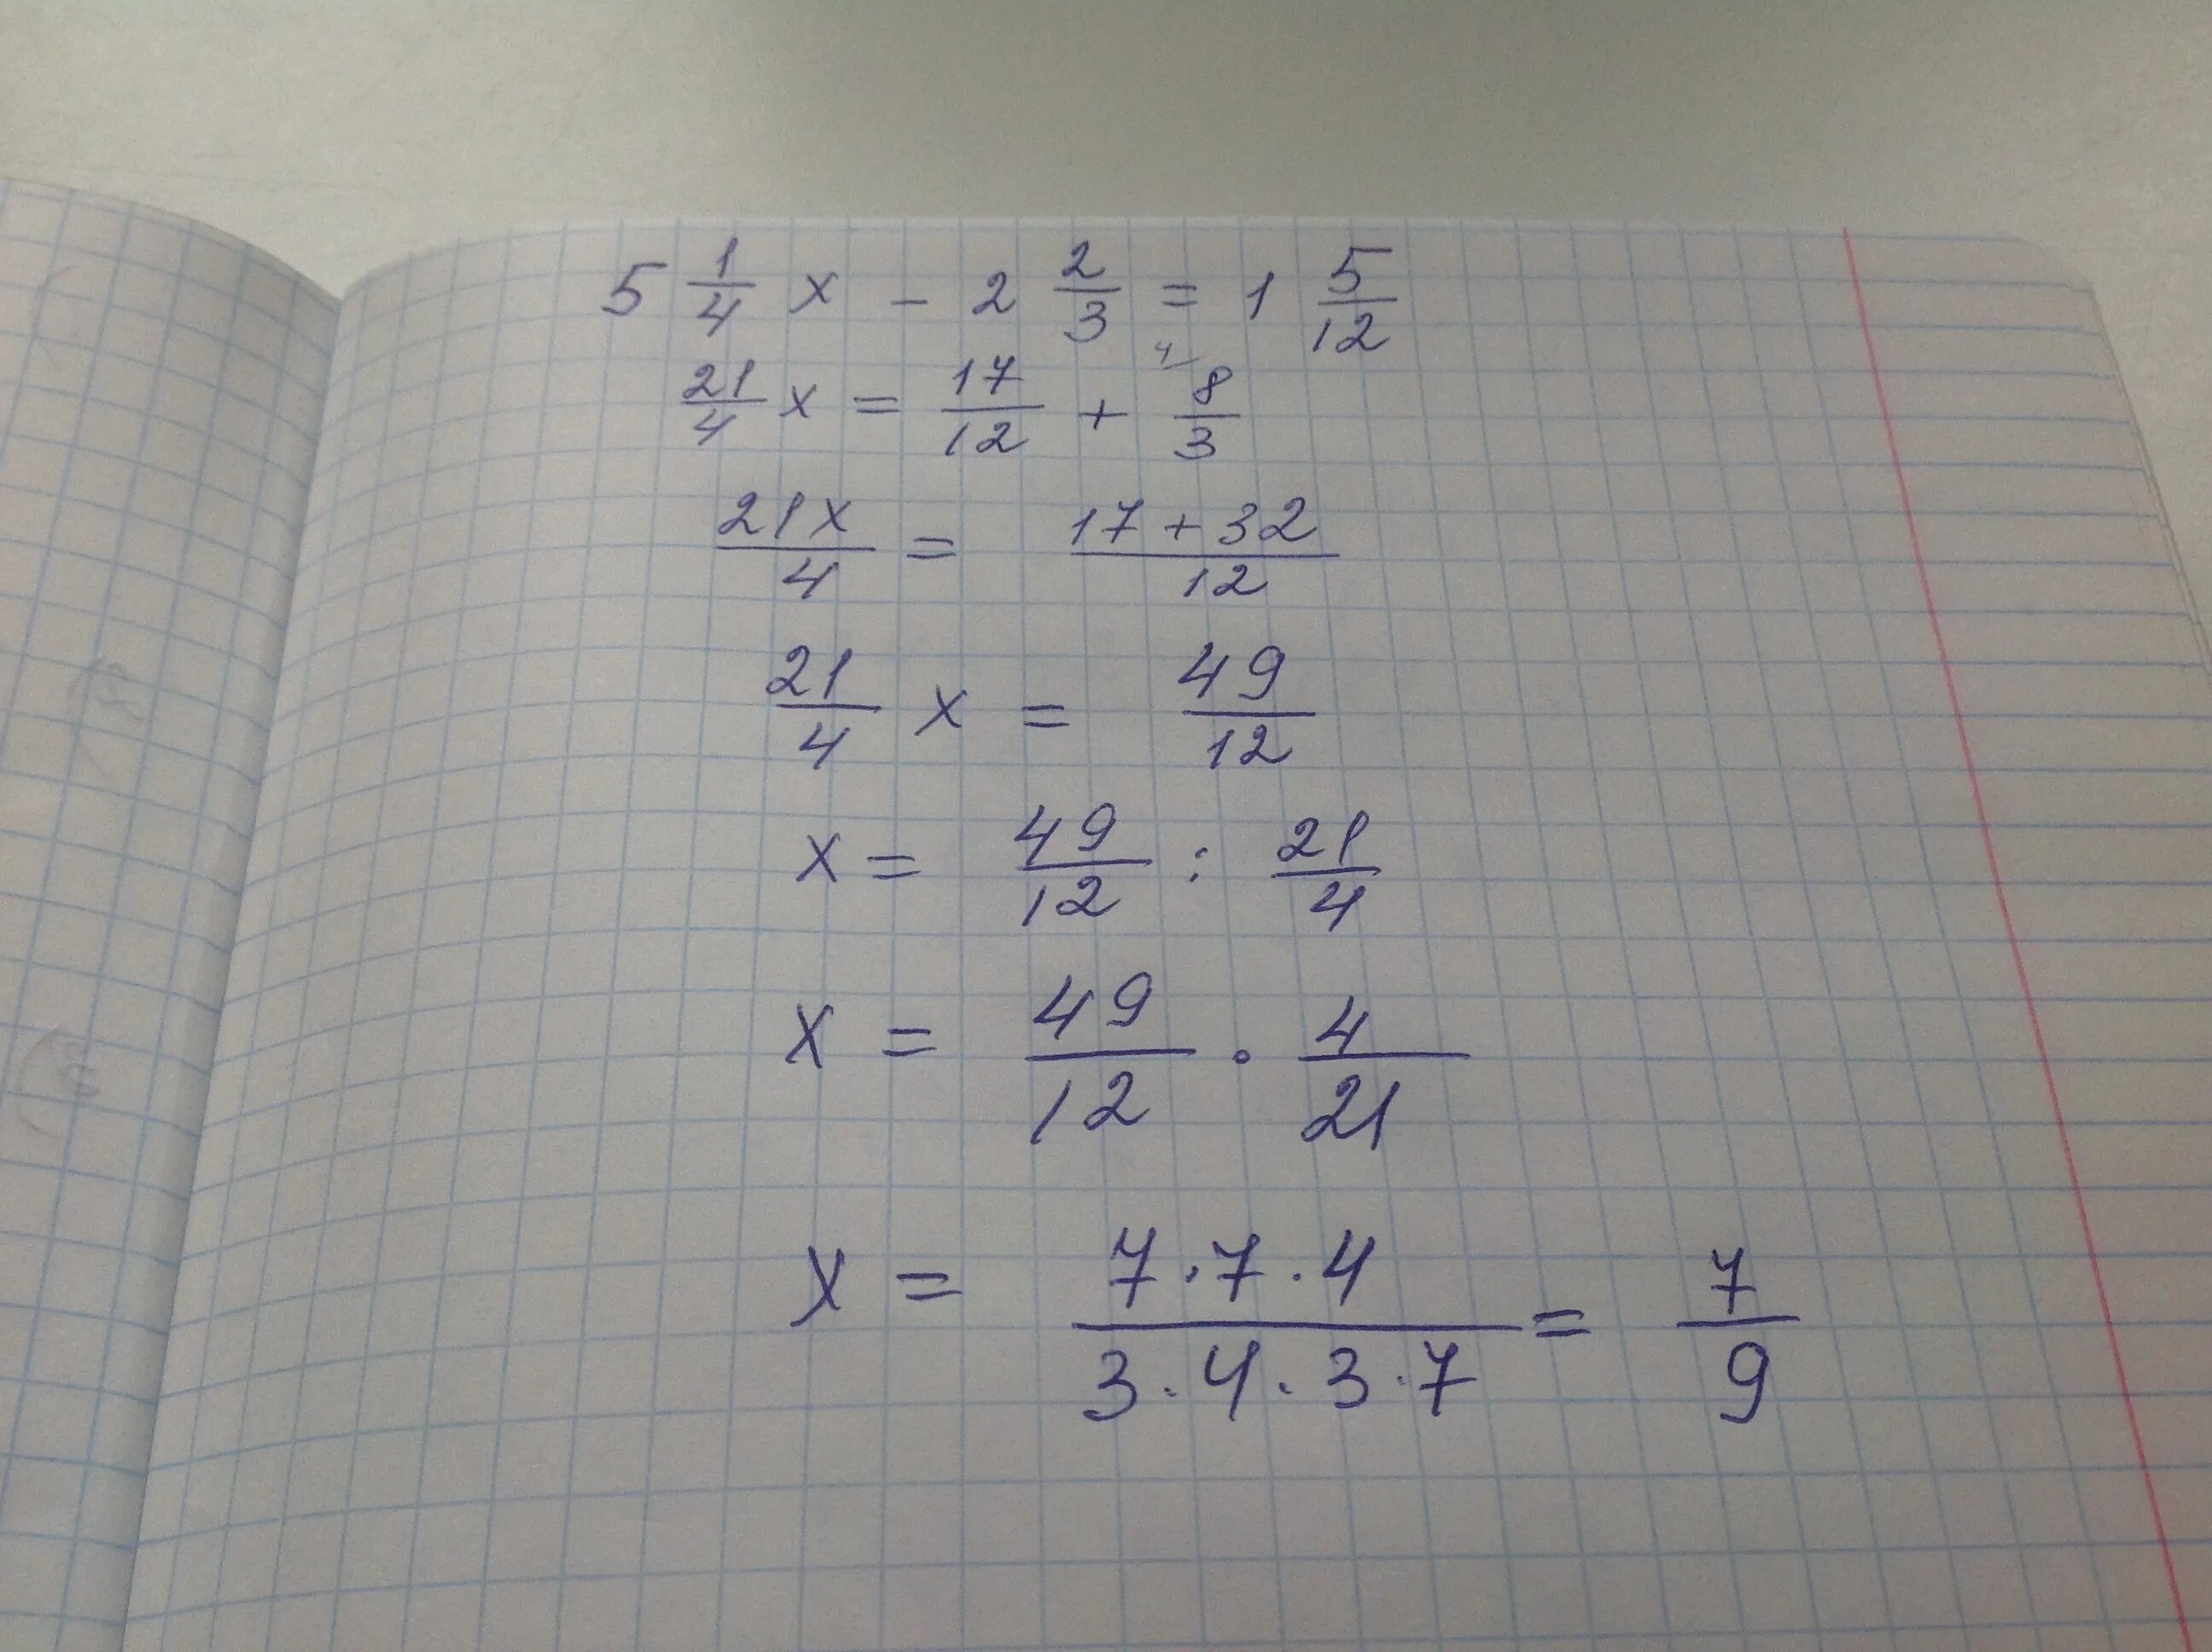 X 1 7 a 0 14. 3x/5-x+1/2=1. X-4/7x=1, 2/5 решение. 4x+4/3x 2+2x-1. 2 2/9 X 7 1/5 + 11/12 X 7 1/5 - 7 1/5 Х 1 3/4.